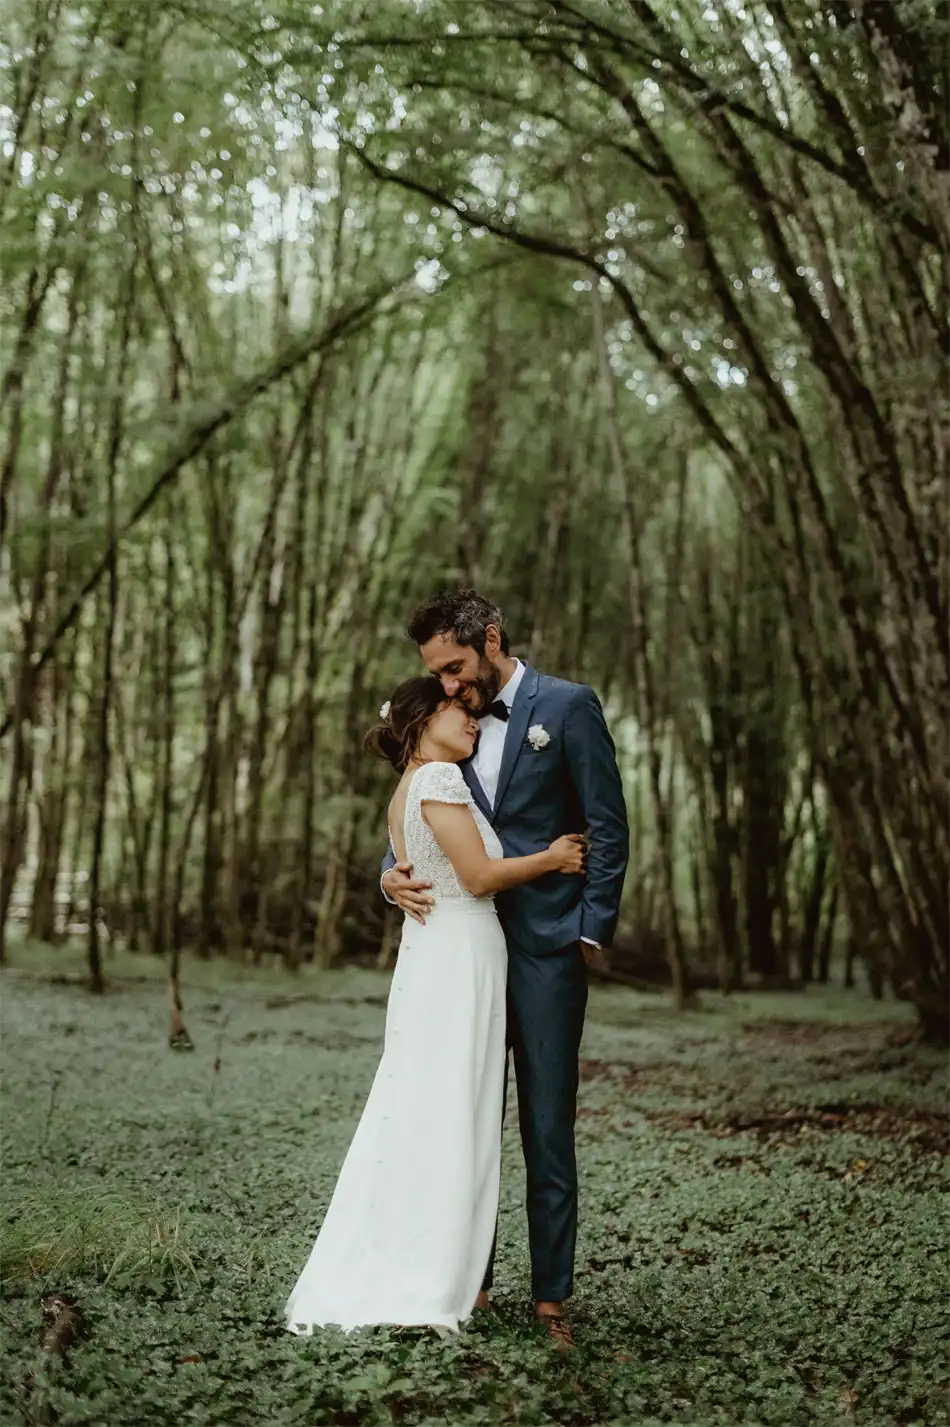 Photographe mariage en Provence ilbstory